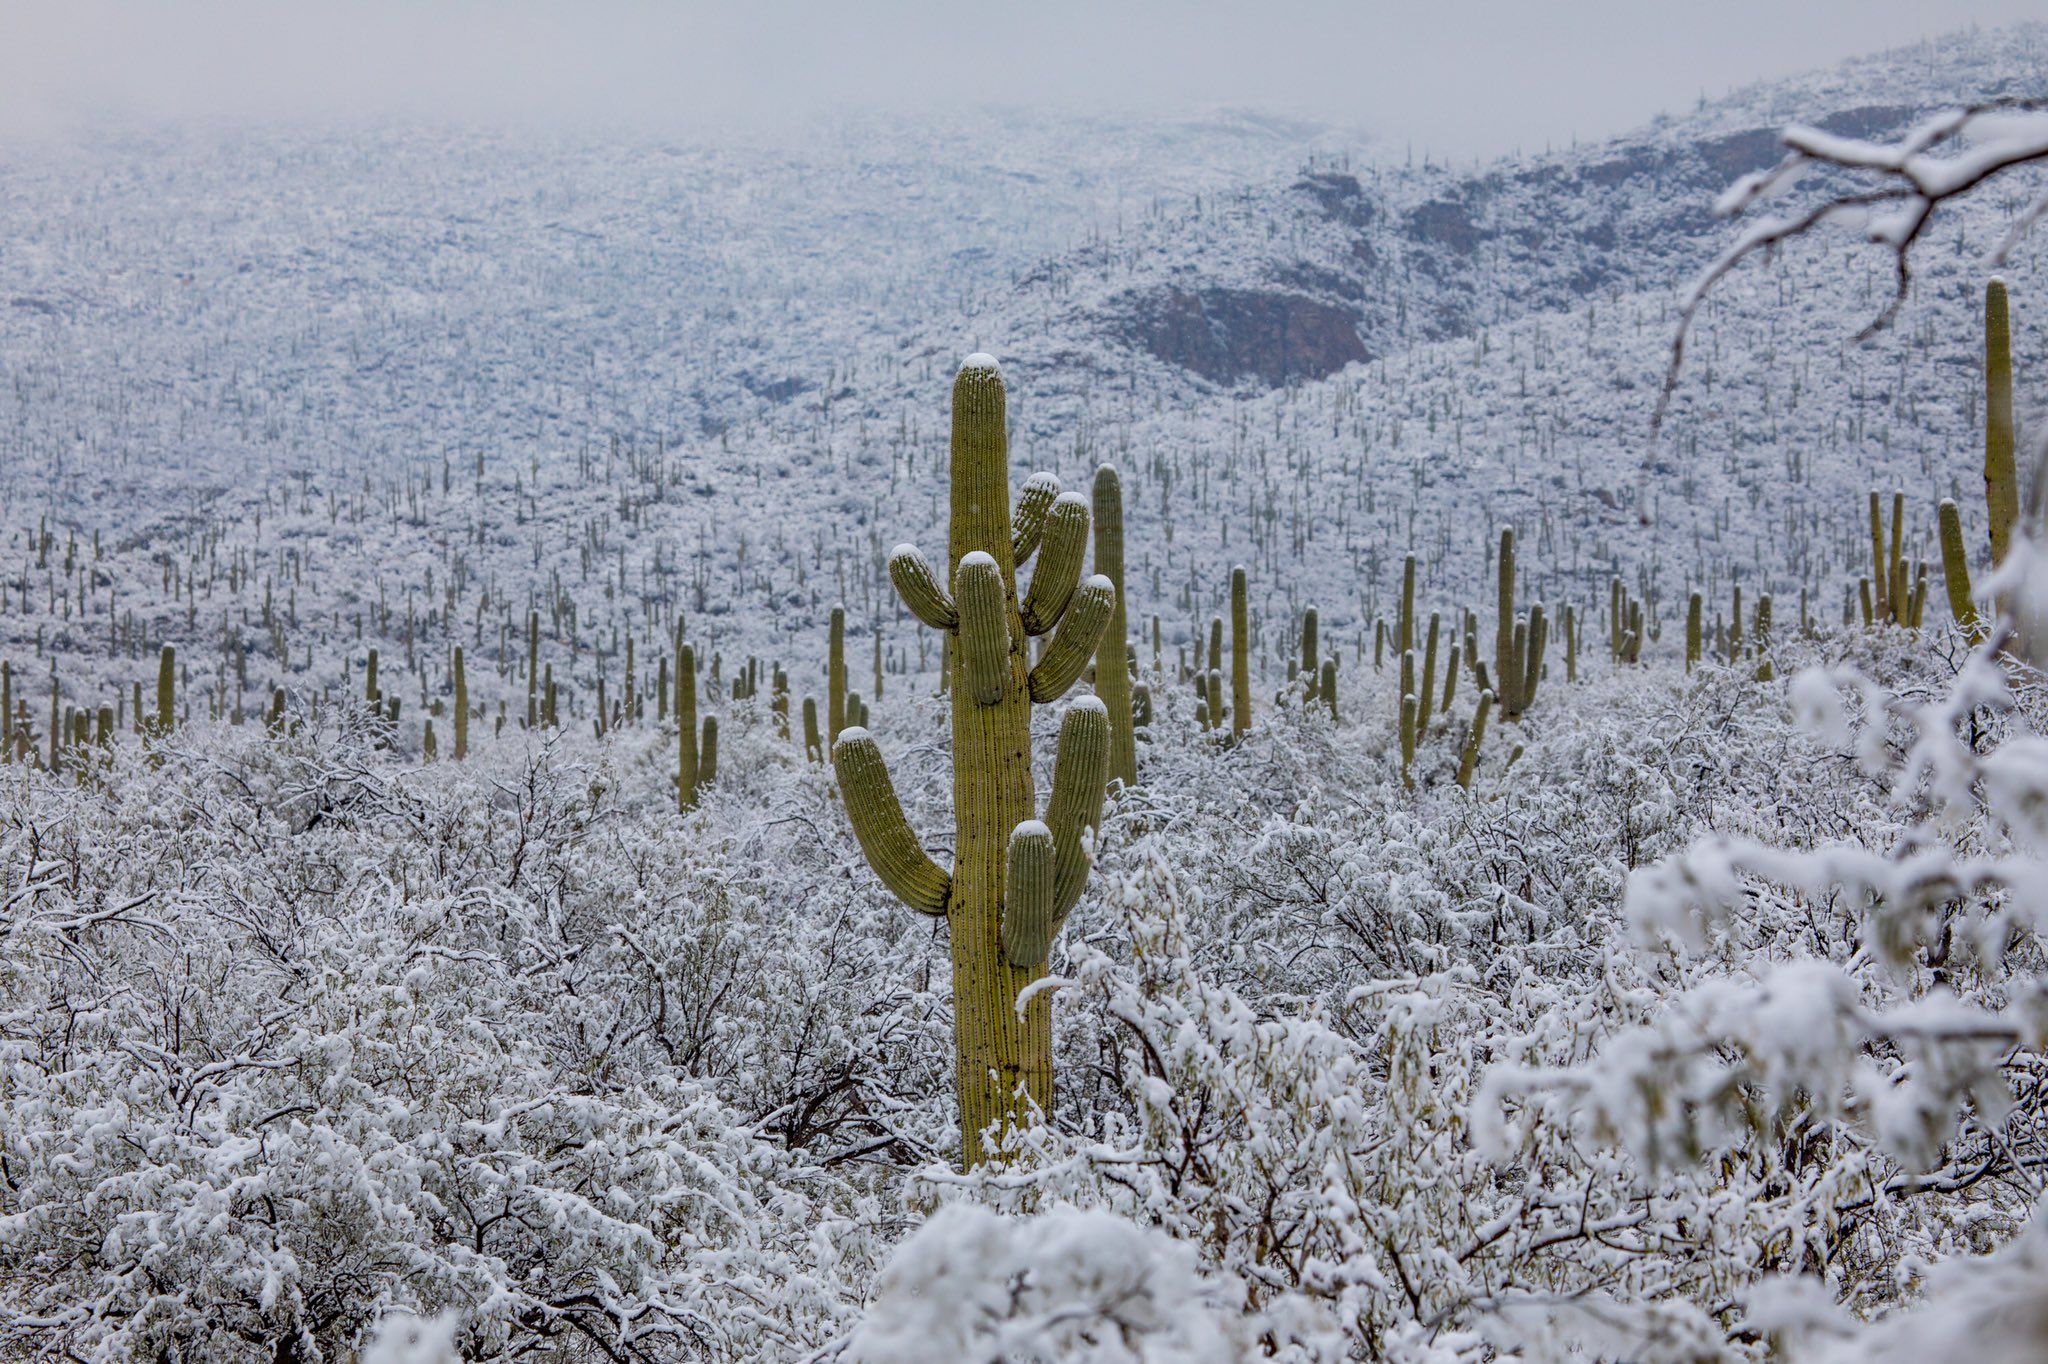 В спекотній Аризоні випав сніг: засніжені кактуси - дуже дивне видовище - фото 418494